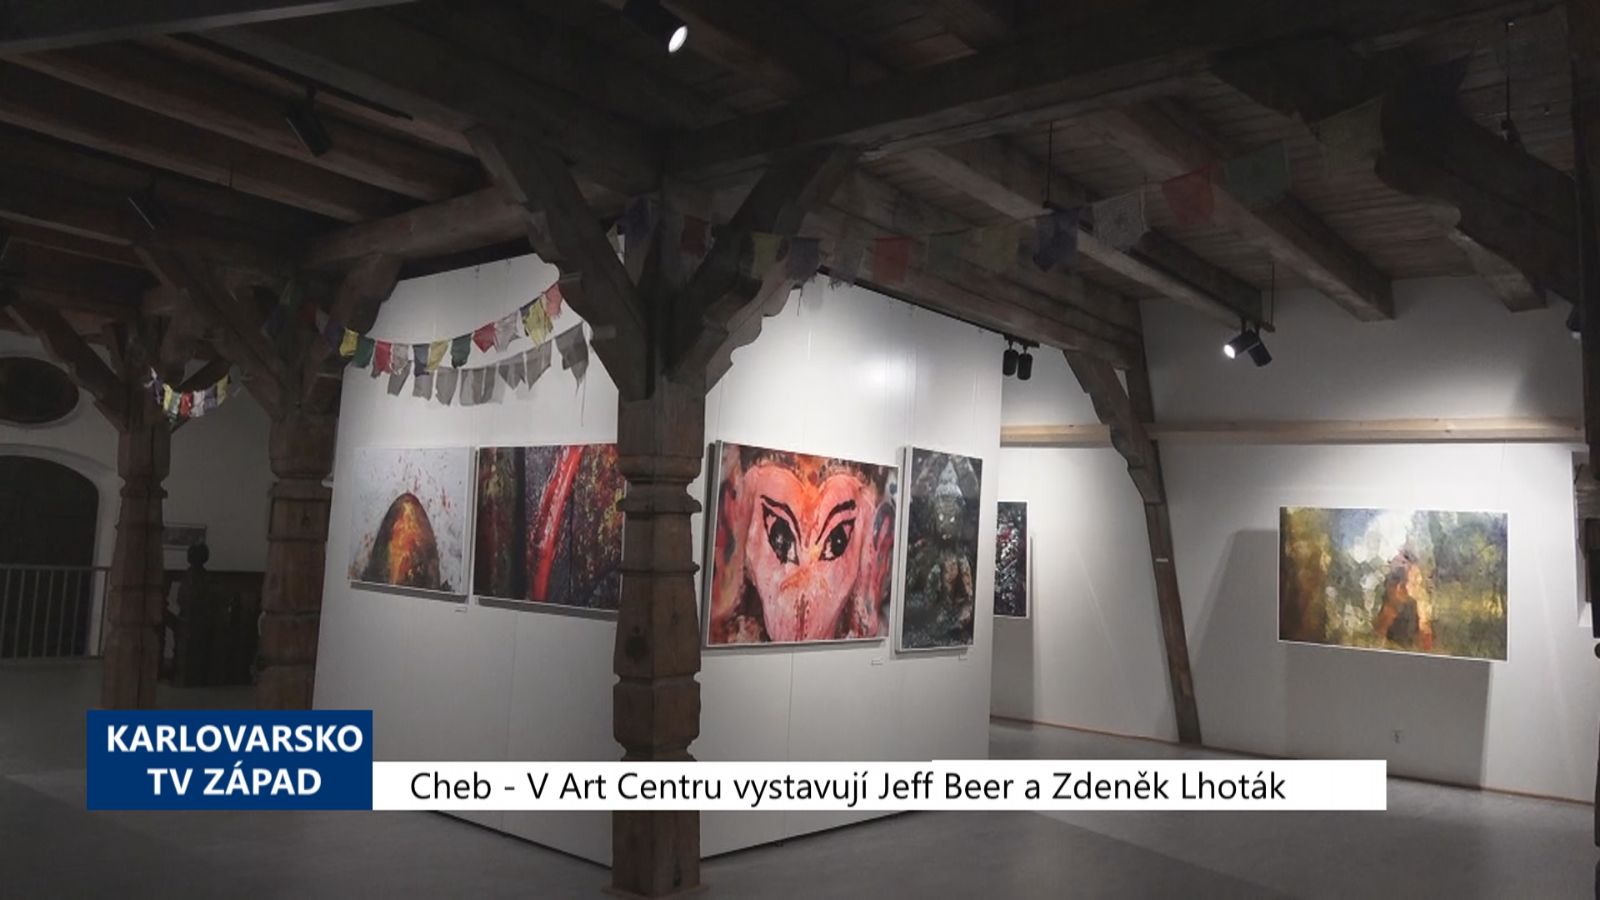 Cheb: V Art centru se představují Jeff Beer a Zdeněk Lhoták (TV Západ)